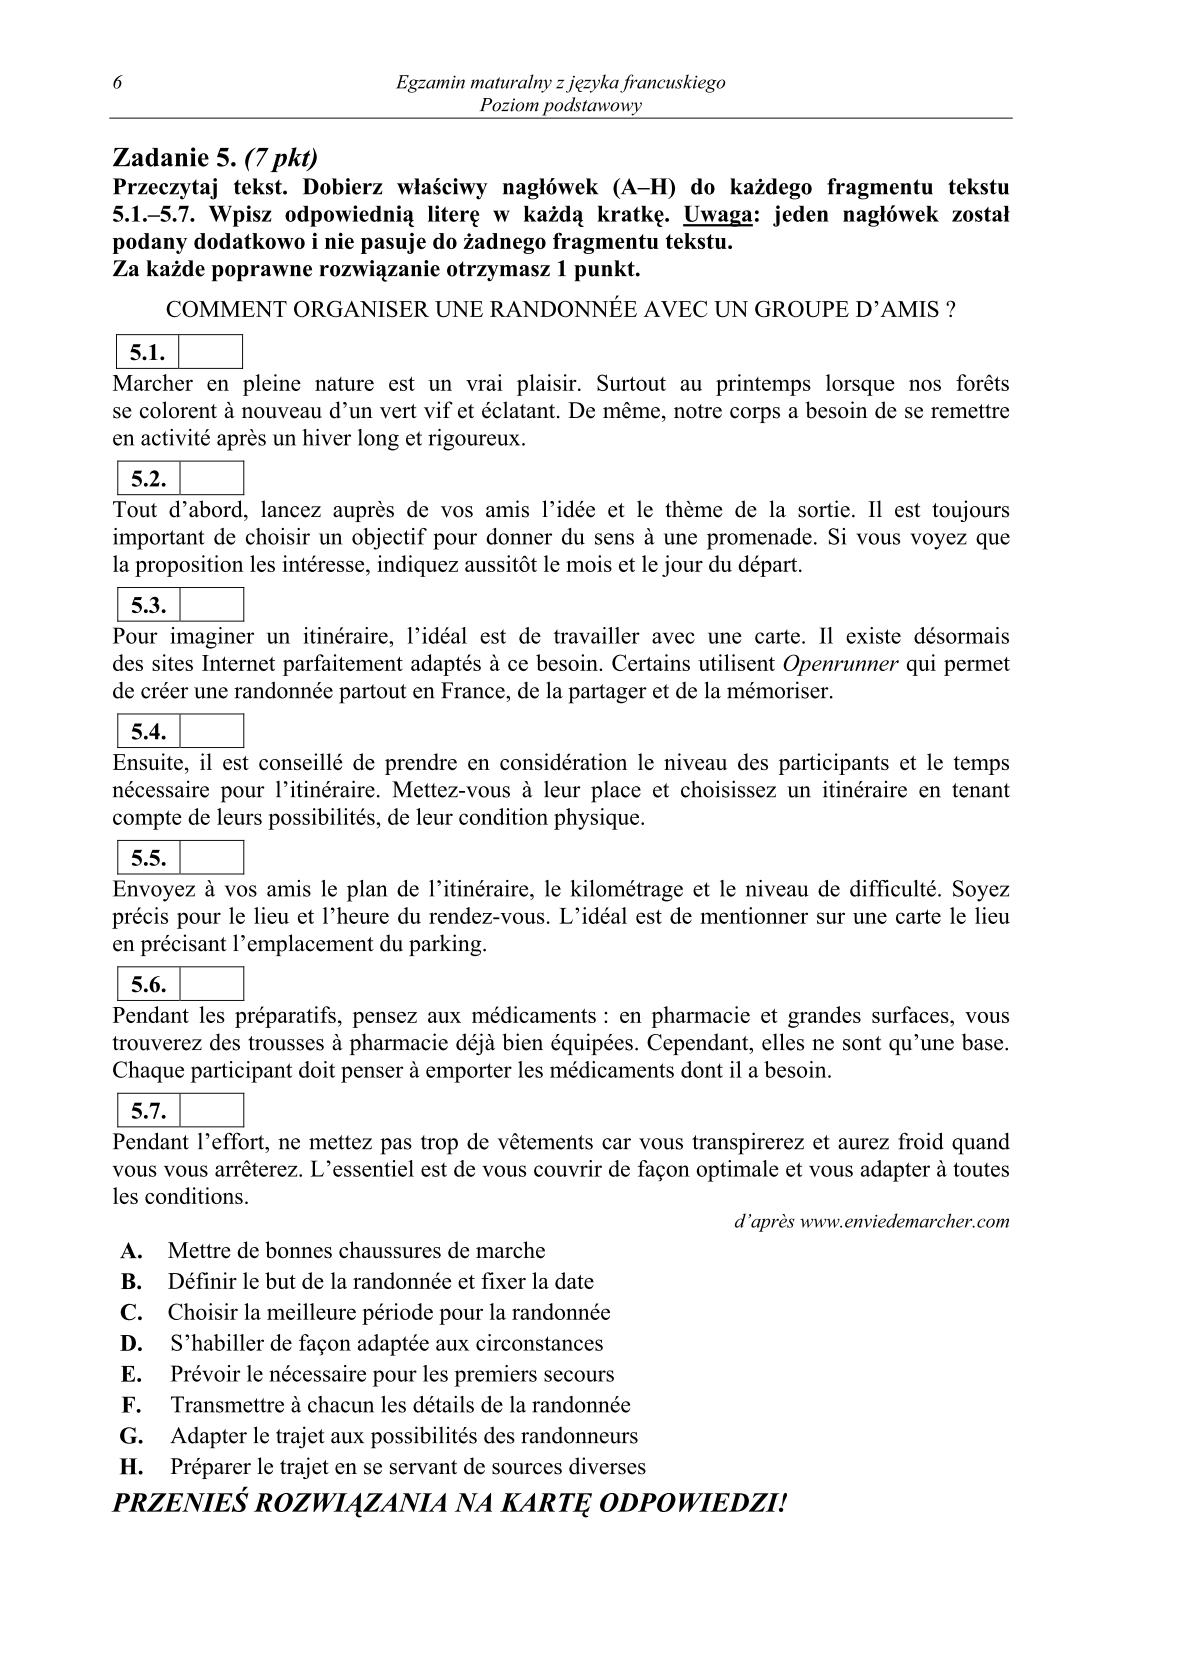 pytania-francuski-poziom-podstawowy-matura-2014-str.6